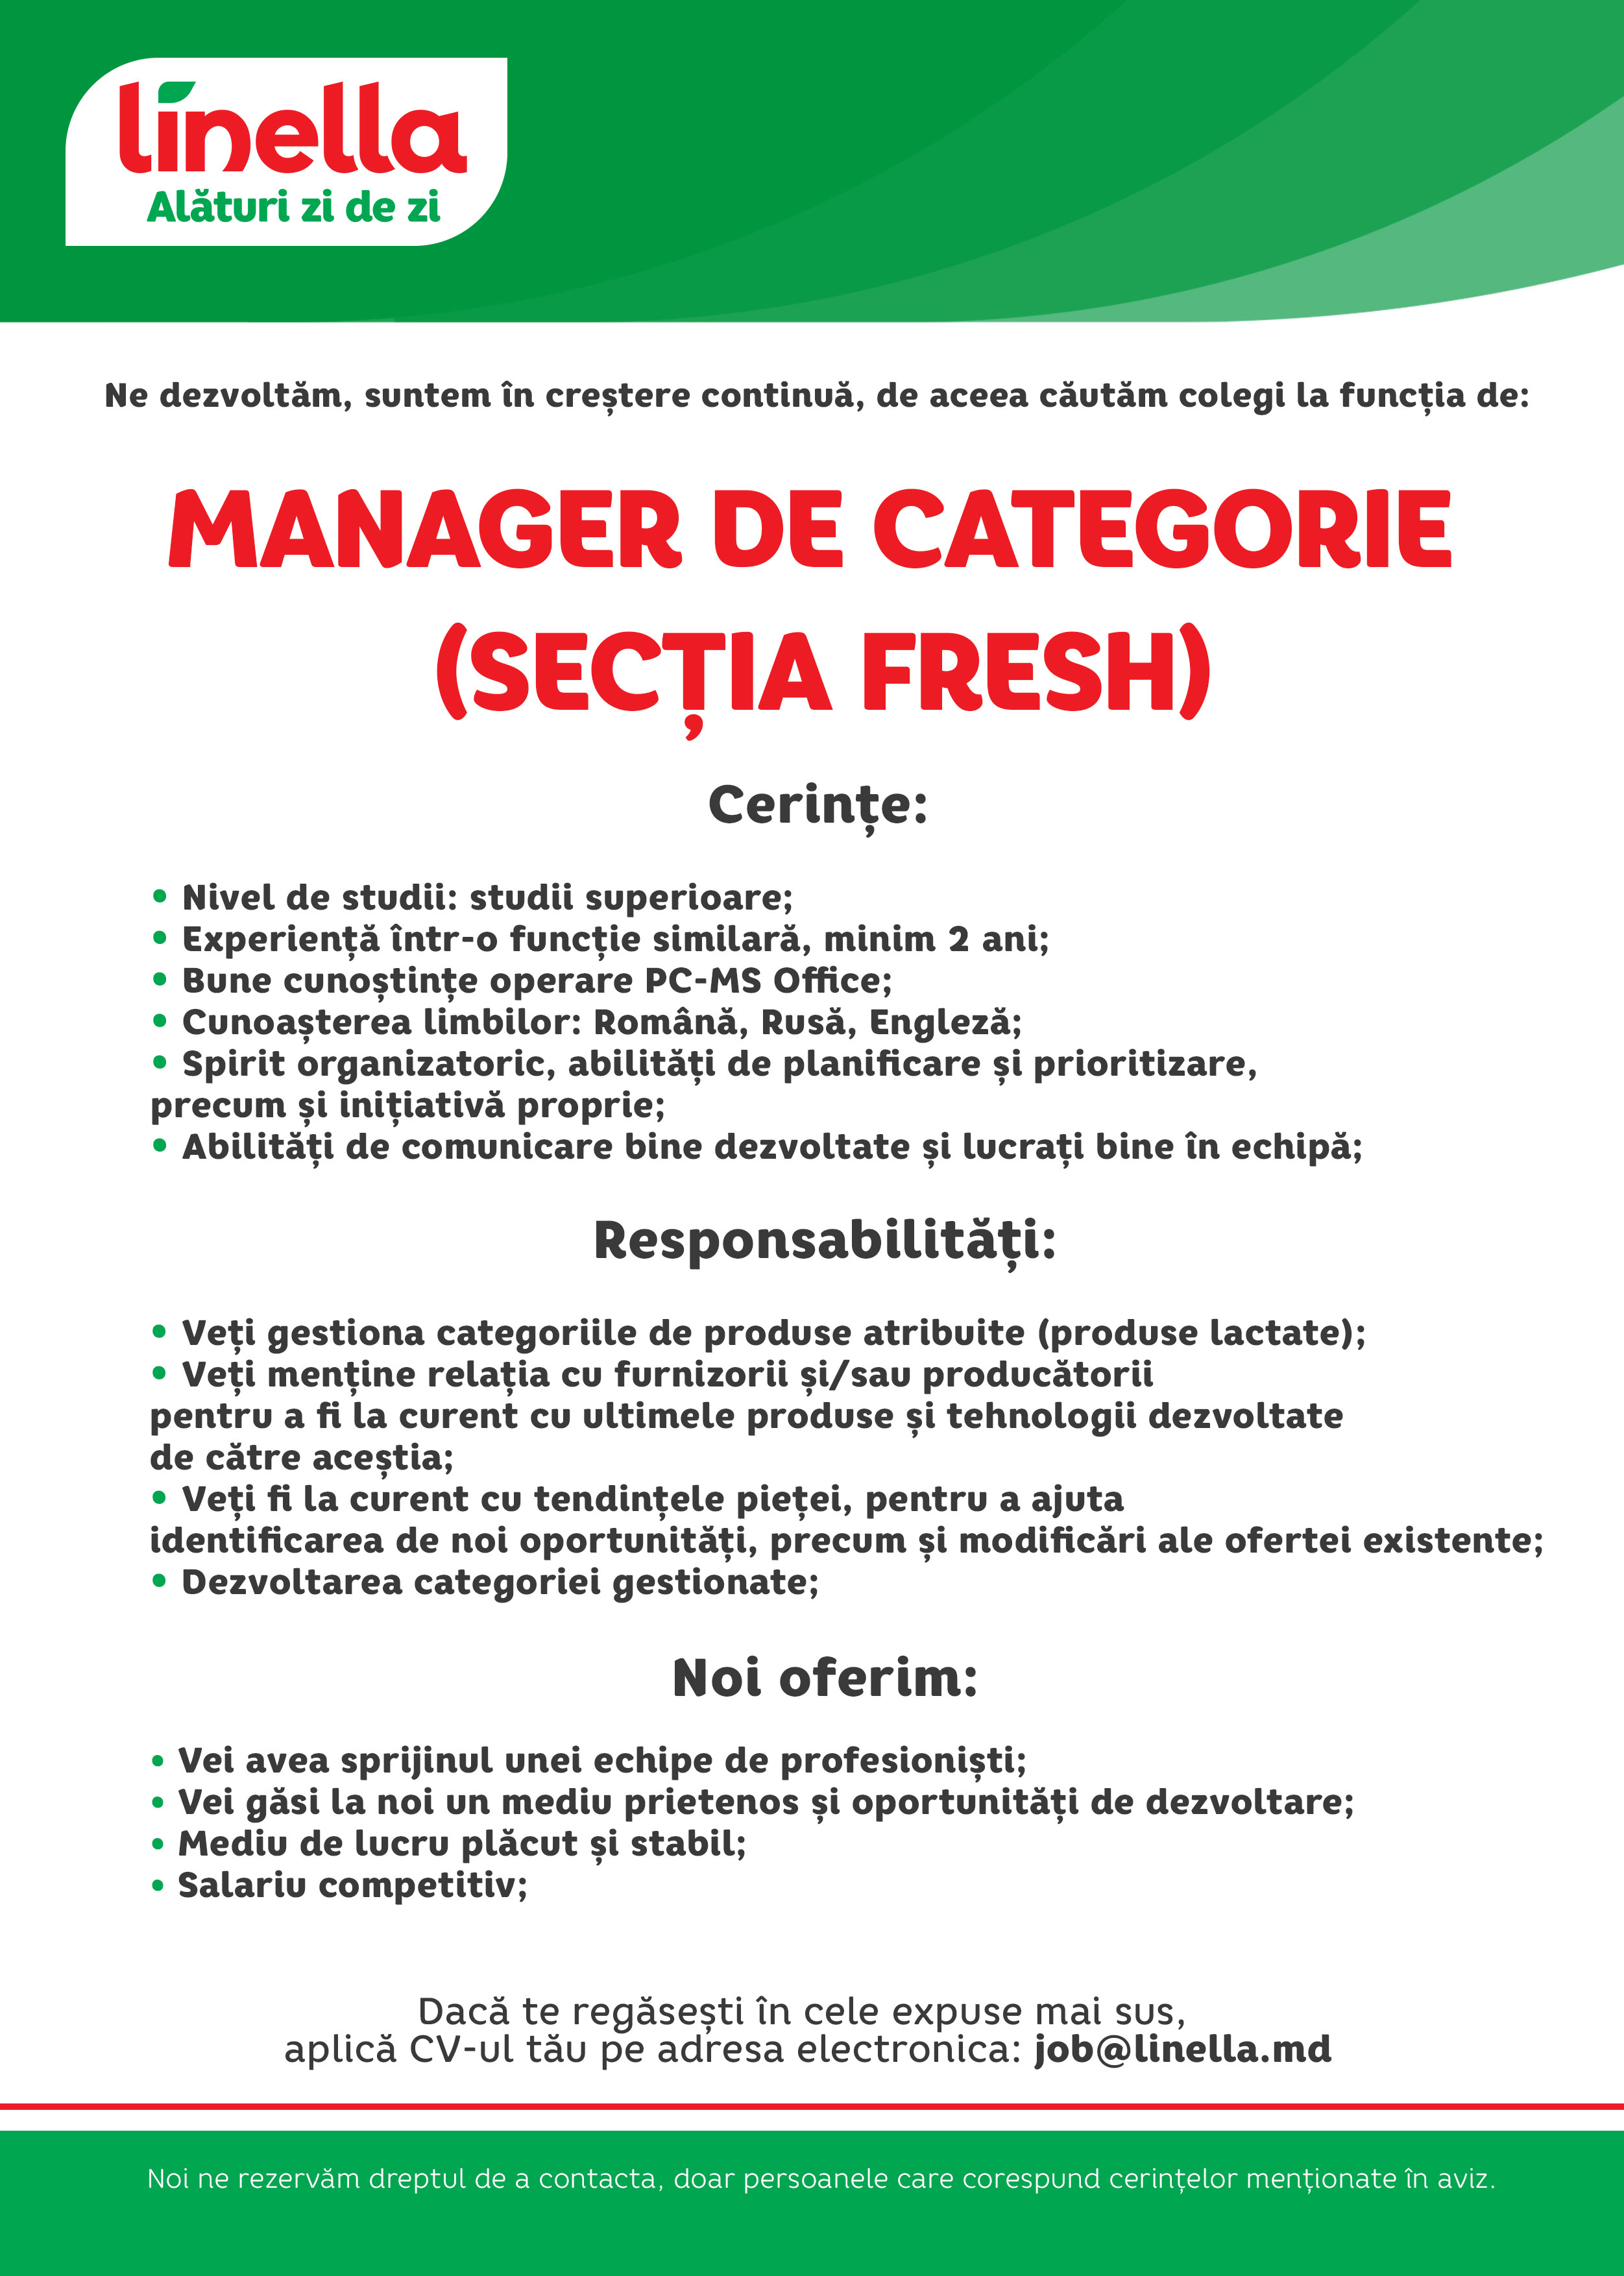 Manager de Categorie (Secția Fresh)